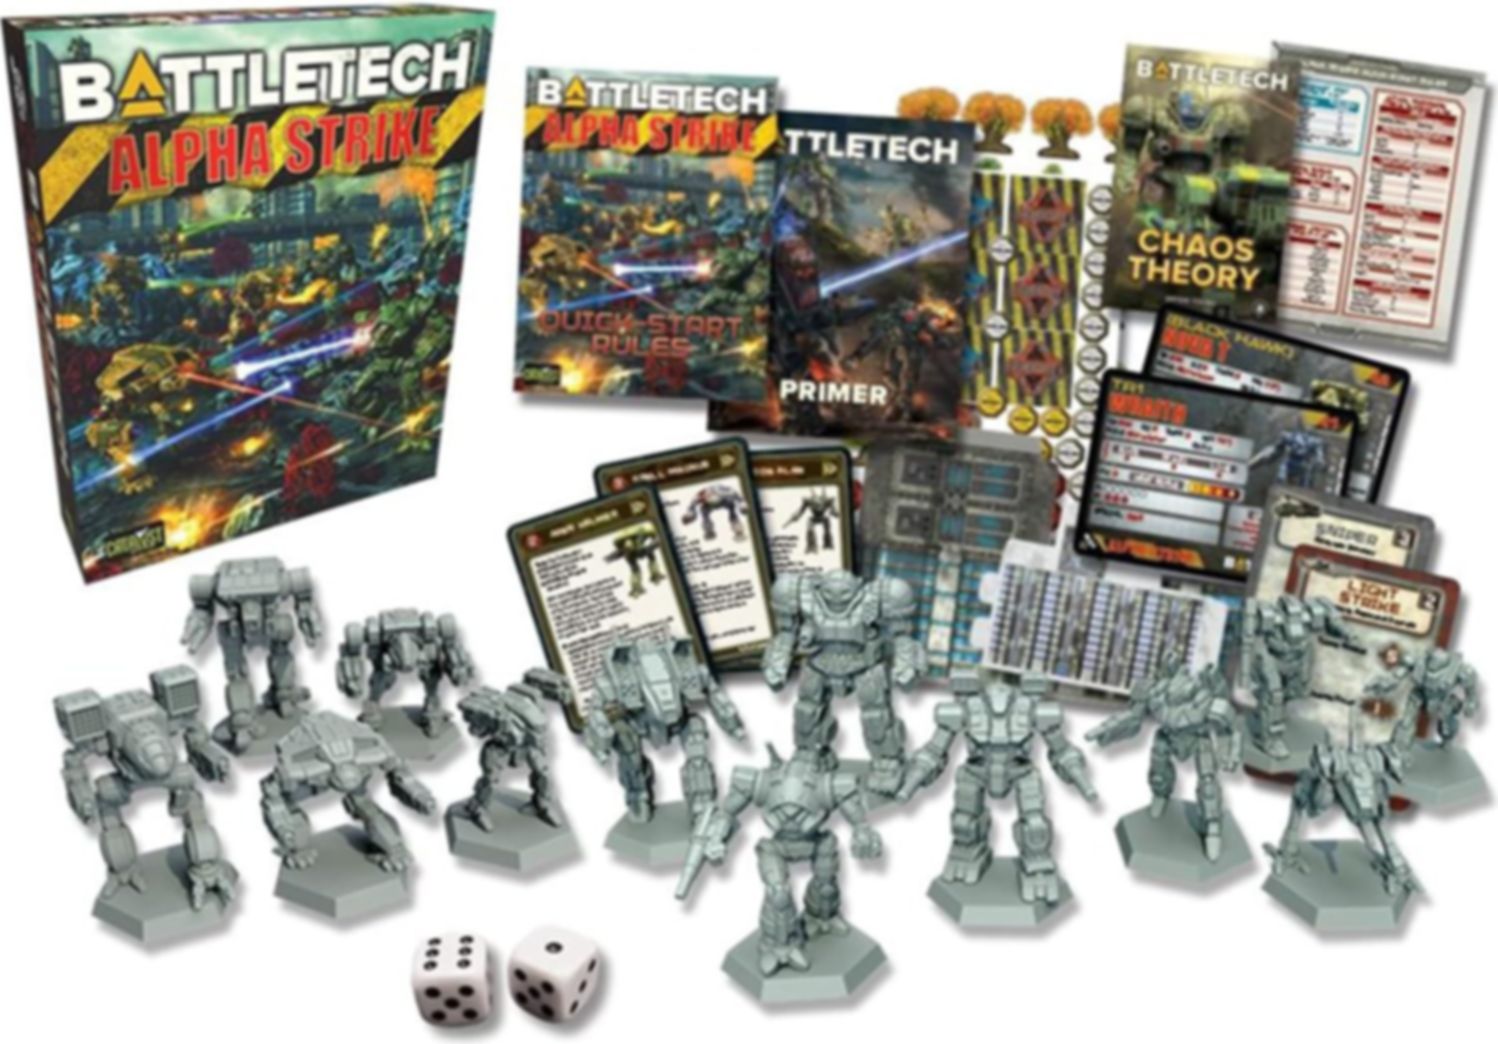 BattleTech: Alpha Strike Boxed Set componenten